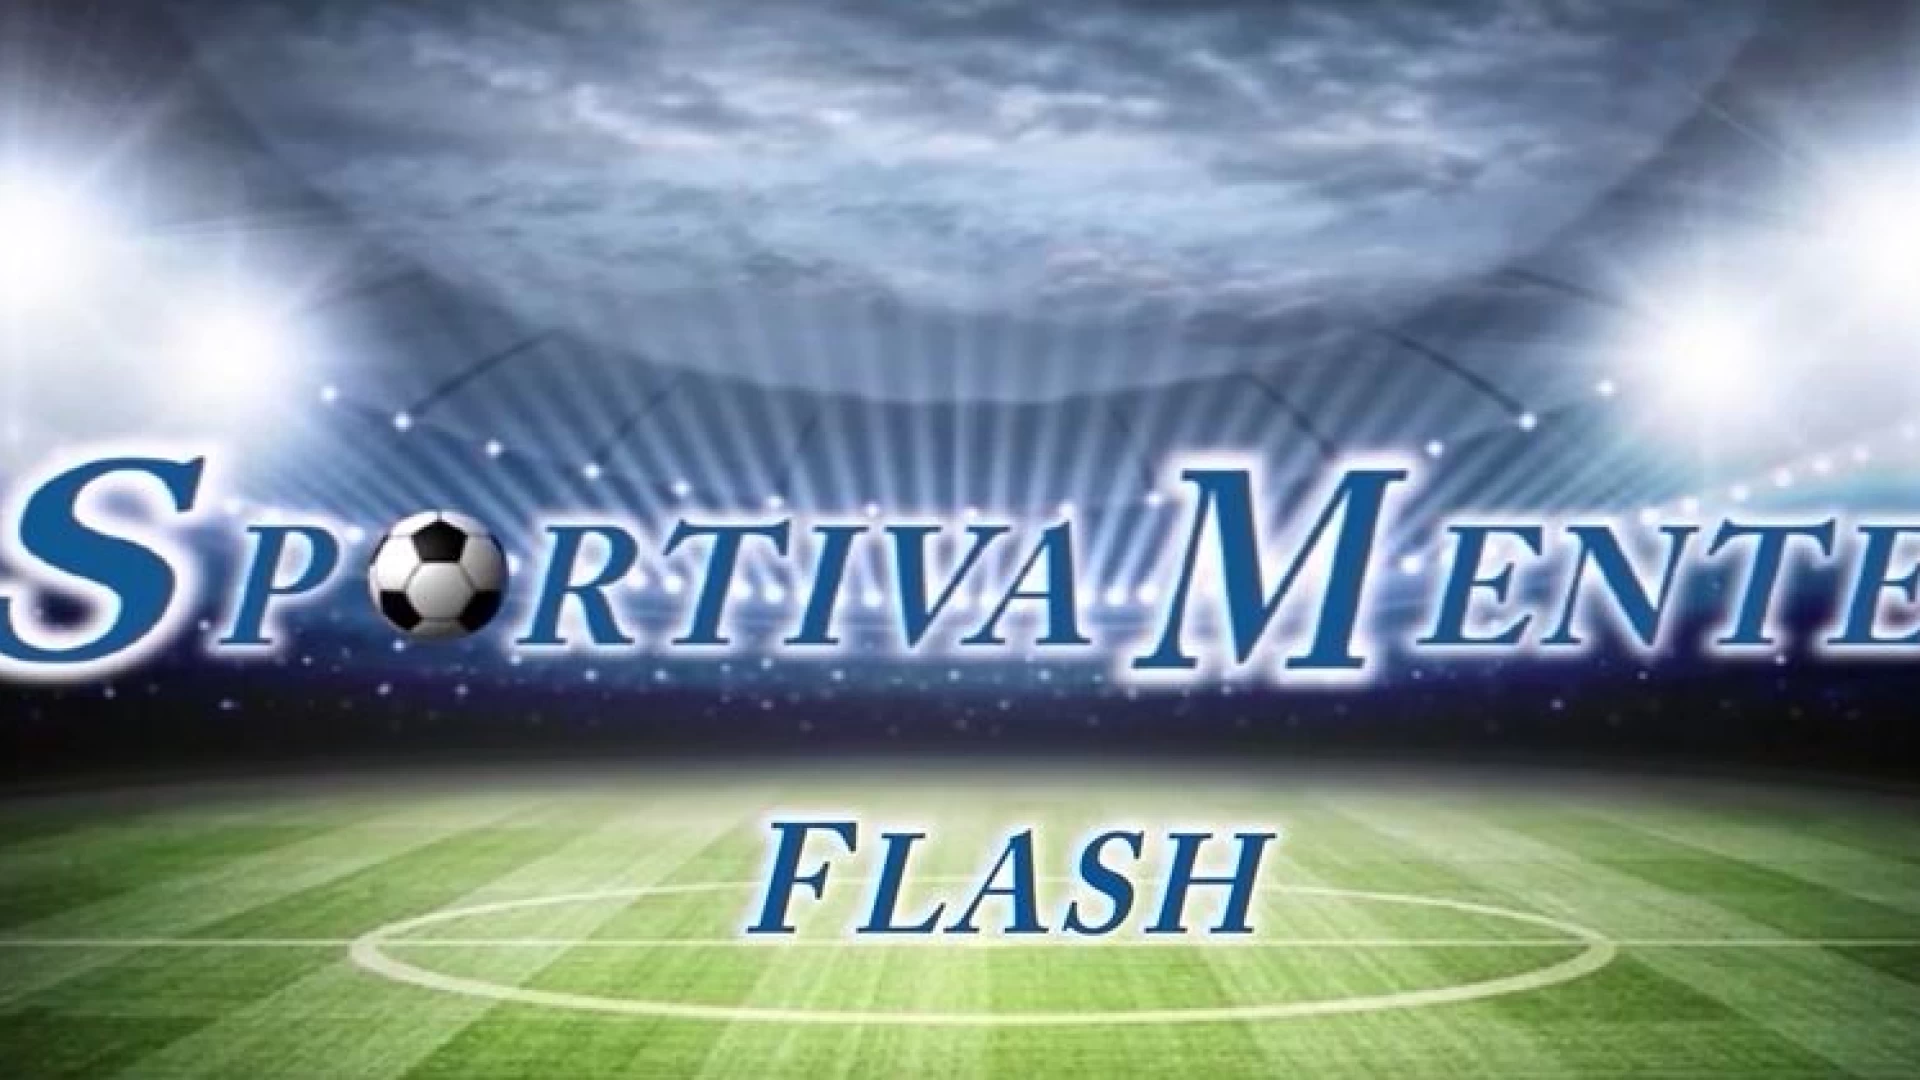 "Sportivamente Flash": L'Approfondimento sportivo di inizio settimana a cura della nostra redazione. Guarda il video